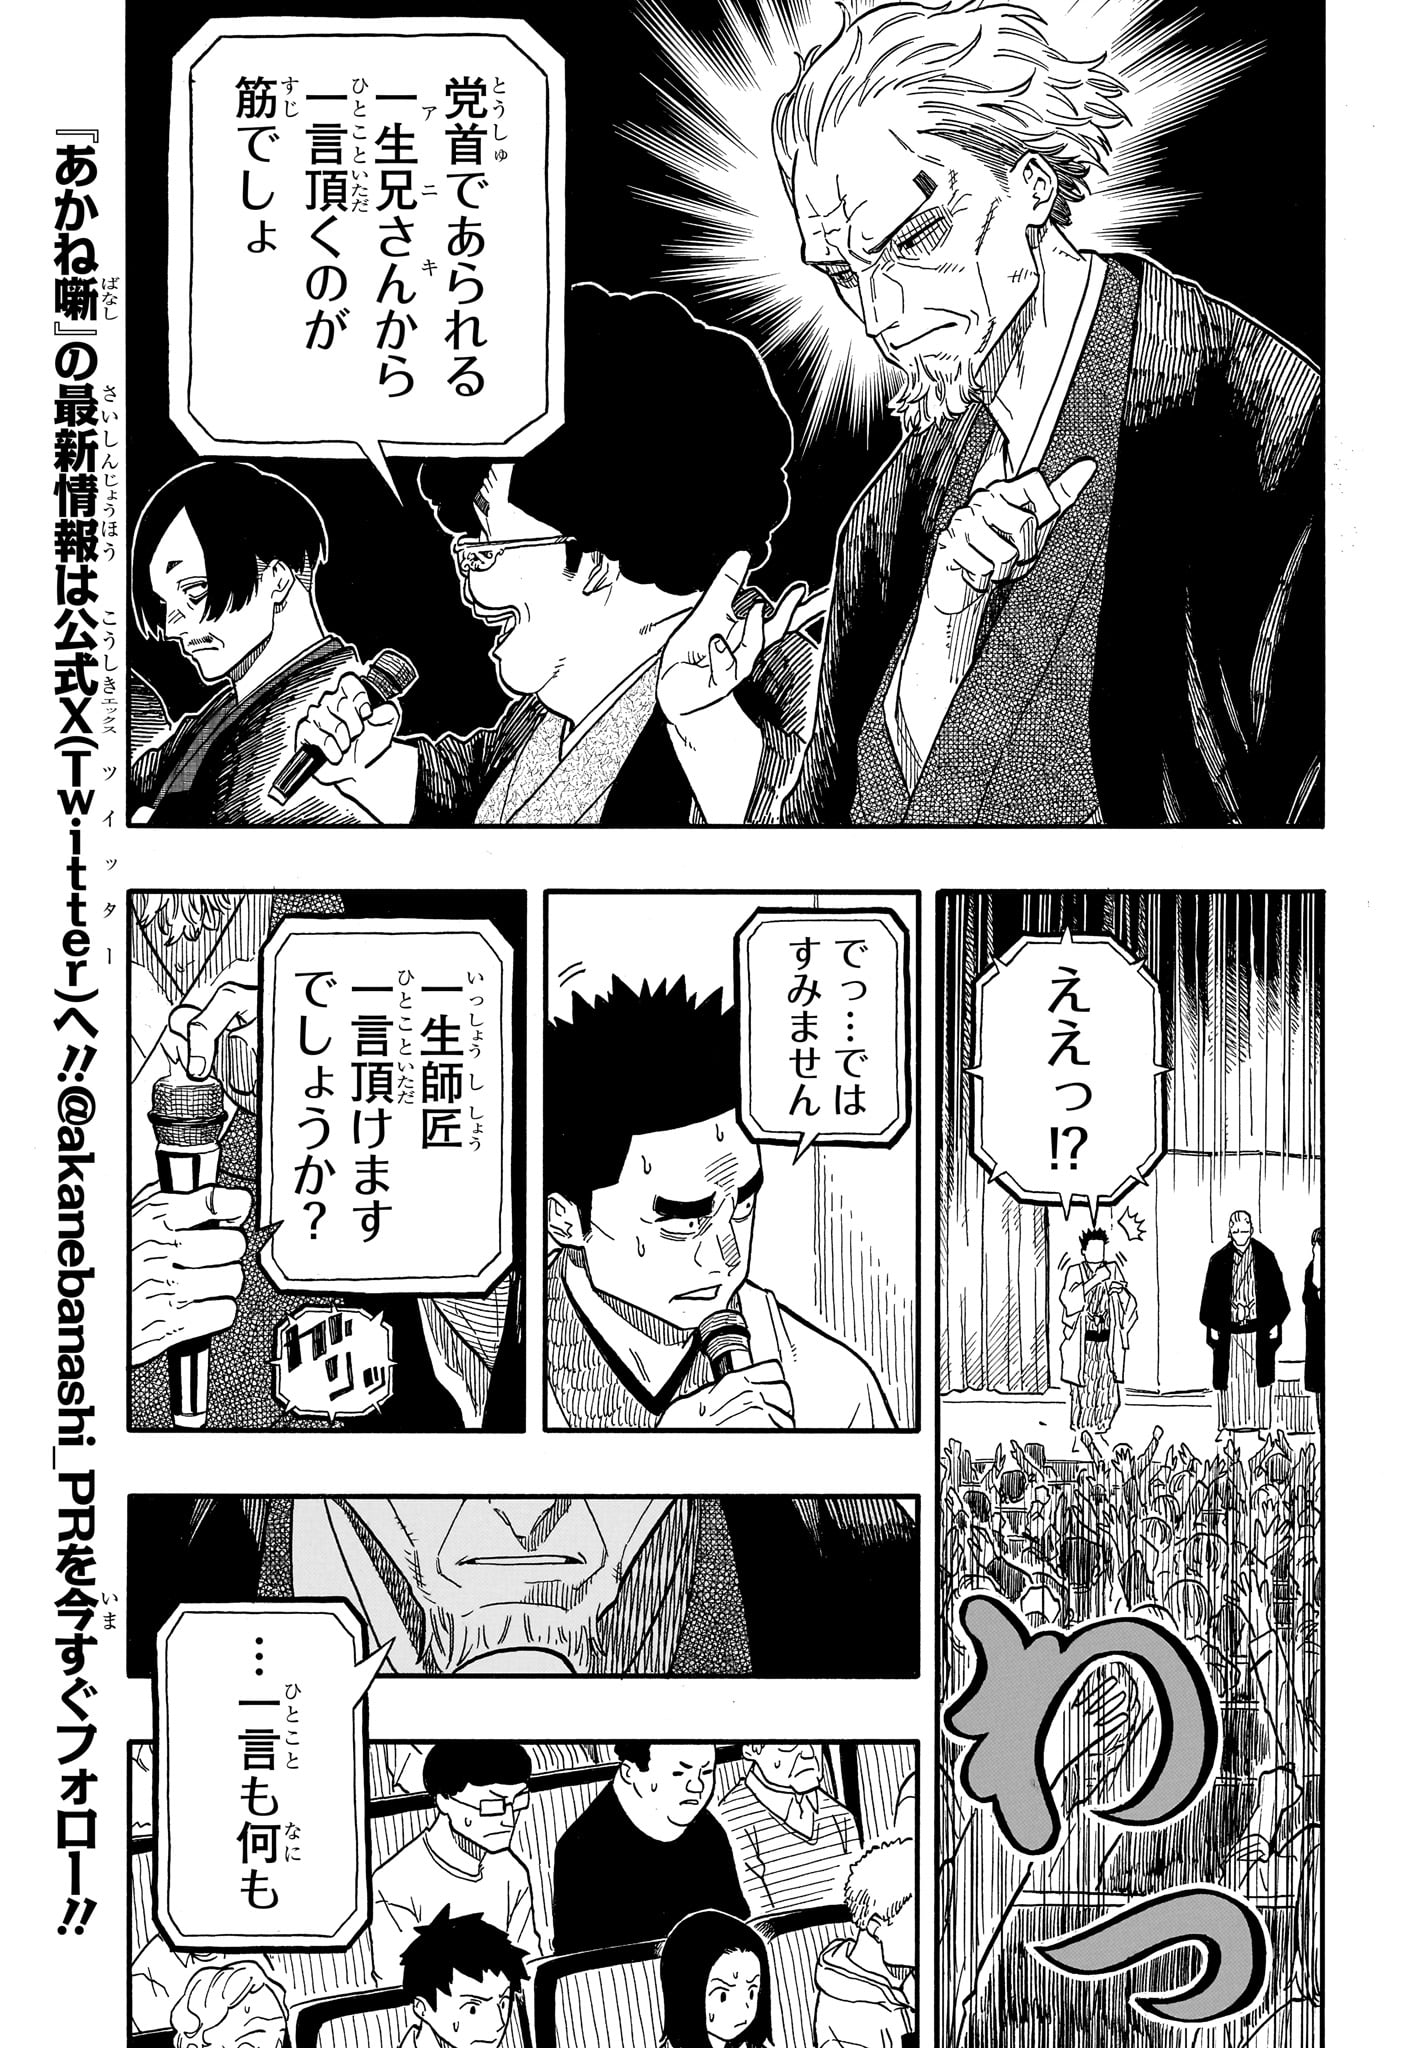 Akane-Banashi - Chapter 110 - Page 7